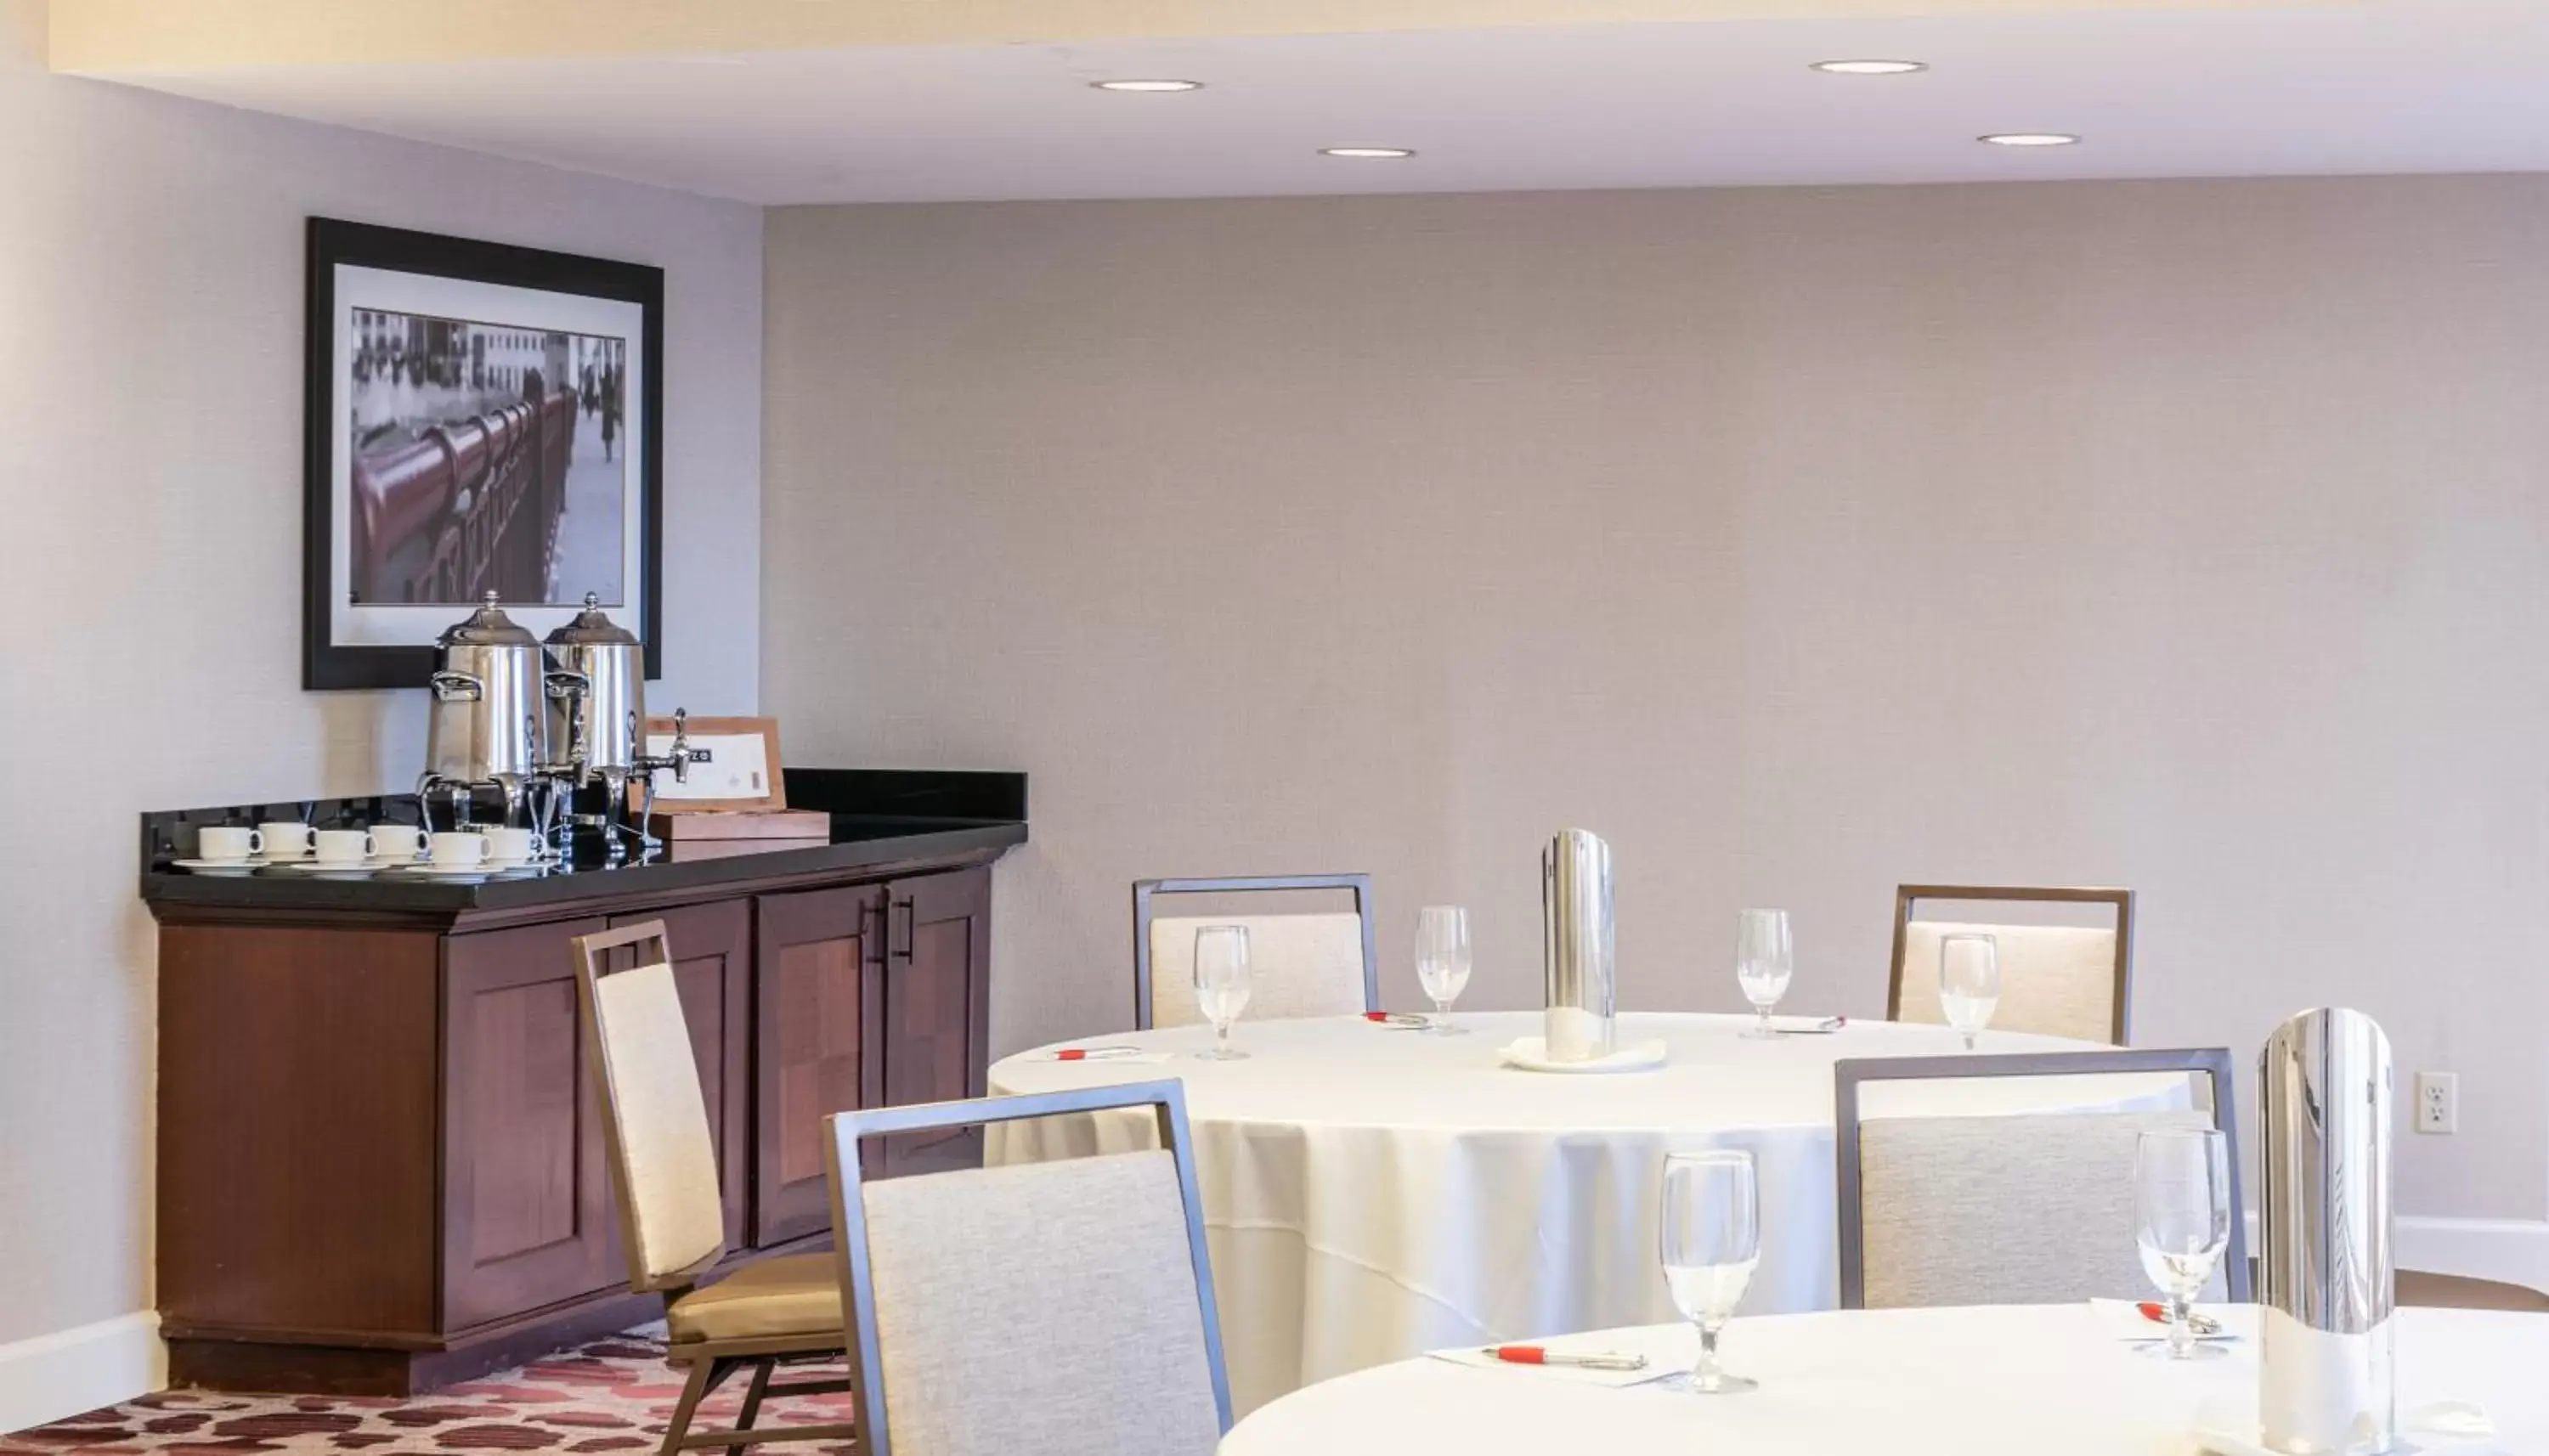 Coffee/tea facilities, Restaurant/Places to Eat in Chicago Marriott Suites Deerfield